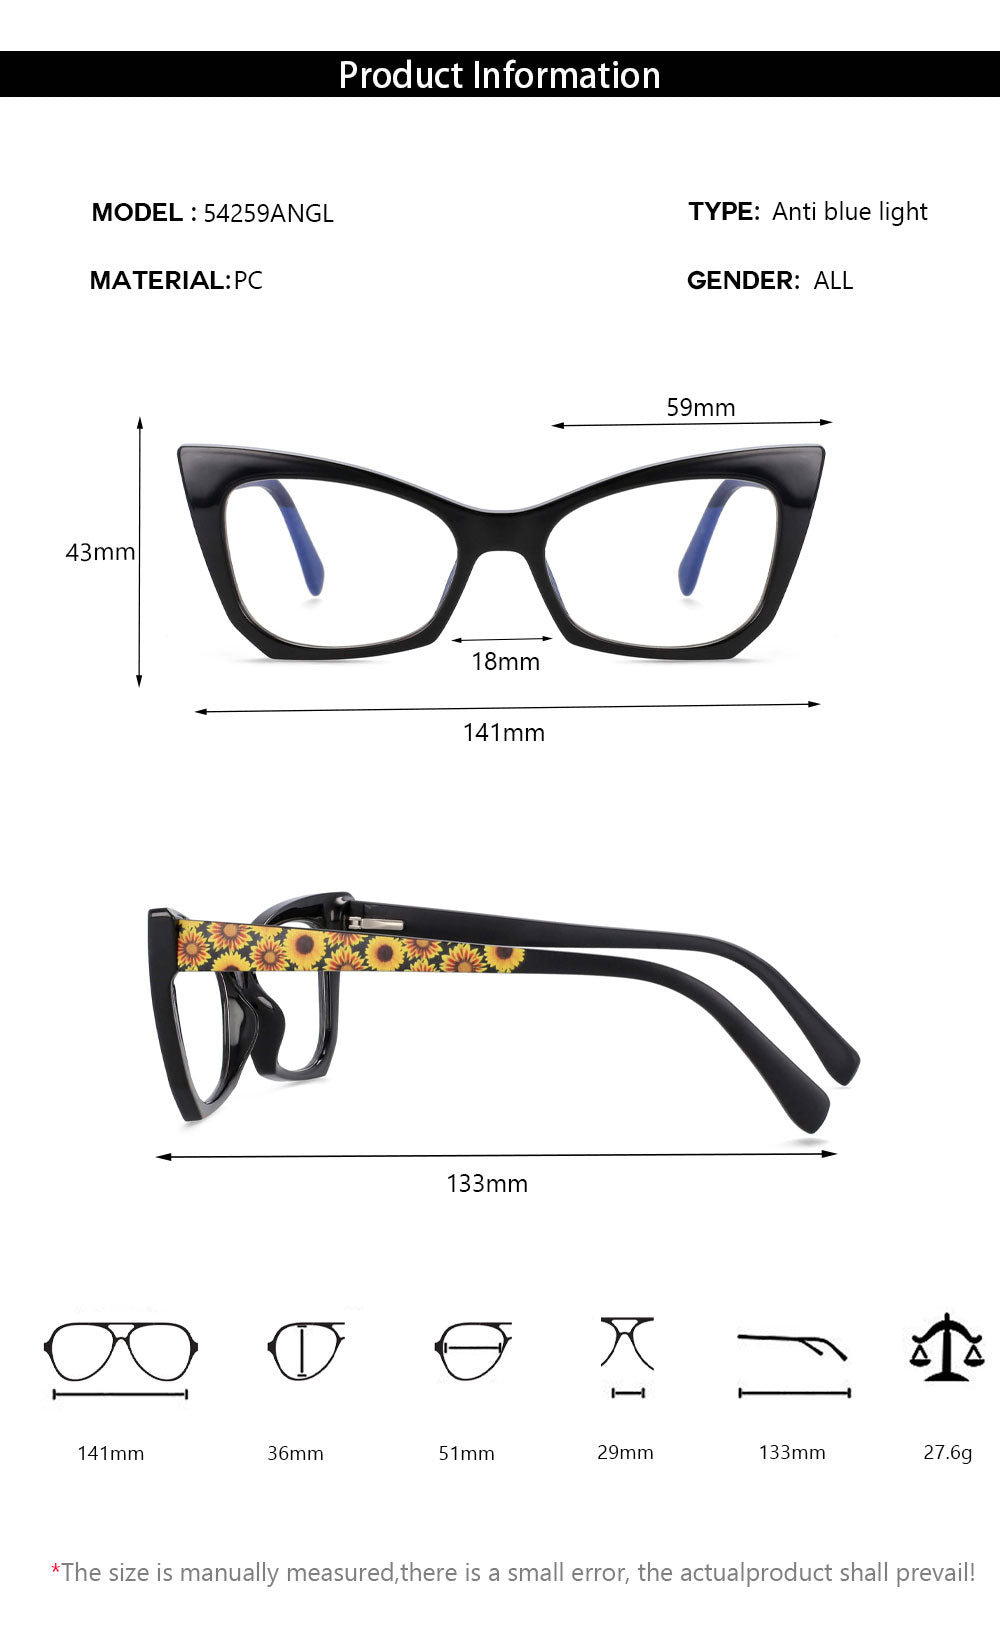 CCSpace Women's Full Rim Square Cat Eye Tr90 Titanium Frame Eyeglasses 54259 Full Rim CCspace   